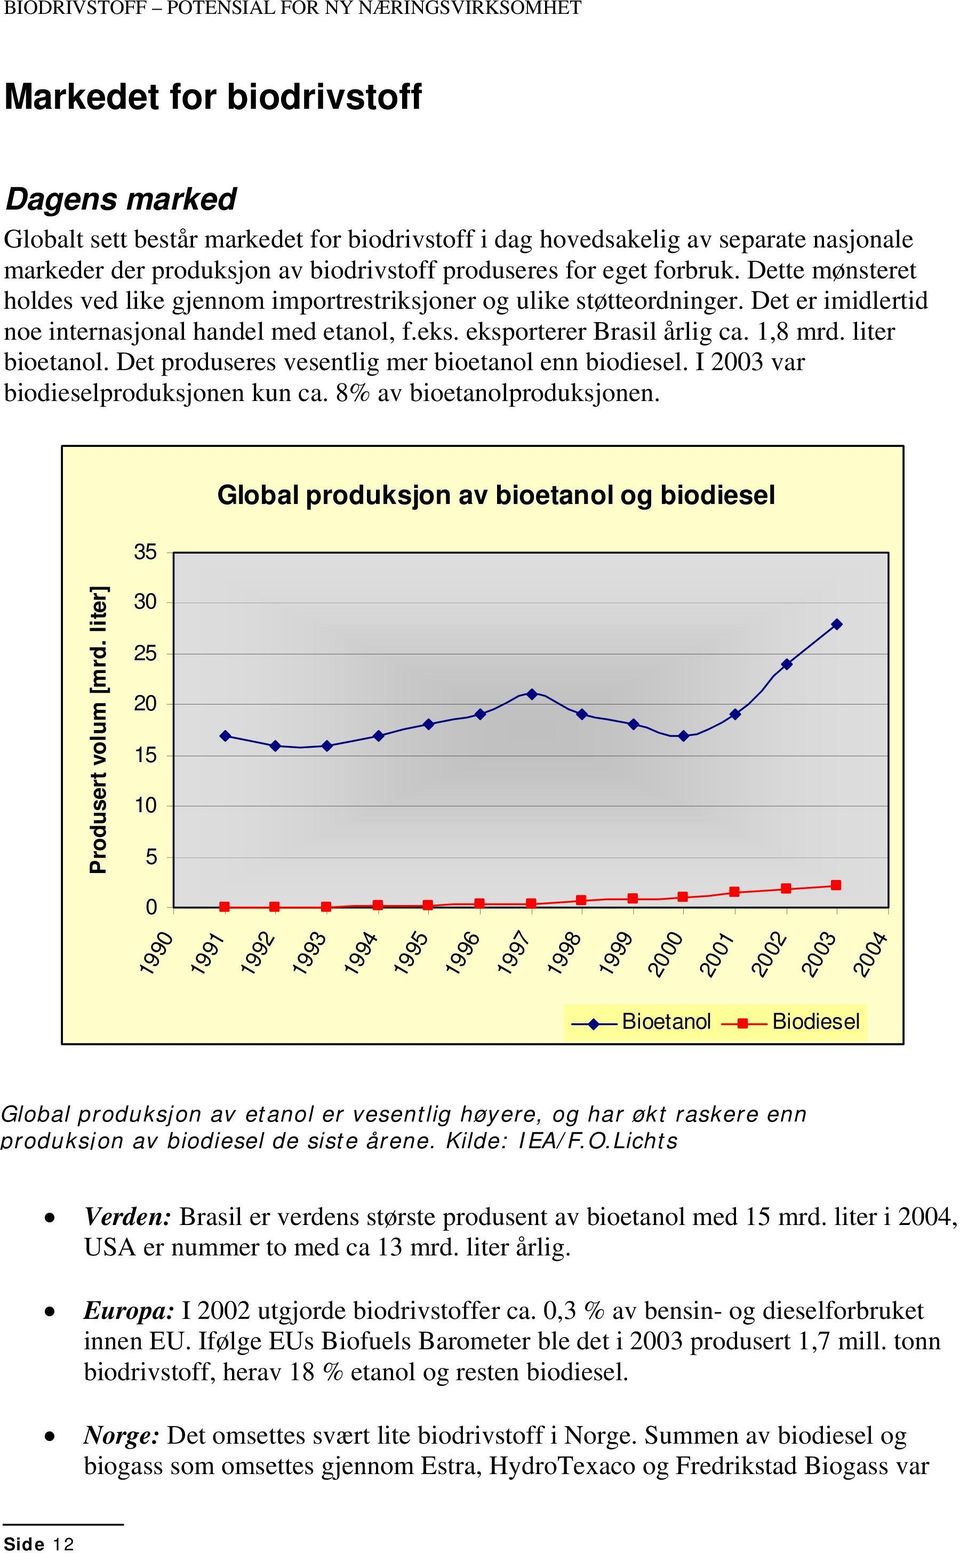 eksporterer Brasil årlig ca. 1,8 mrd. liter bioetanol. Det produseres vesentlig mer bioetanol enn biodiesel. I 2003 var biodieselproduksjonen kun ca. 8% av bioetanolproduksjonen.